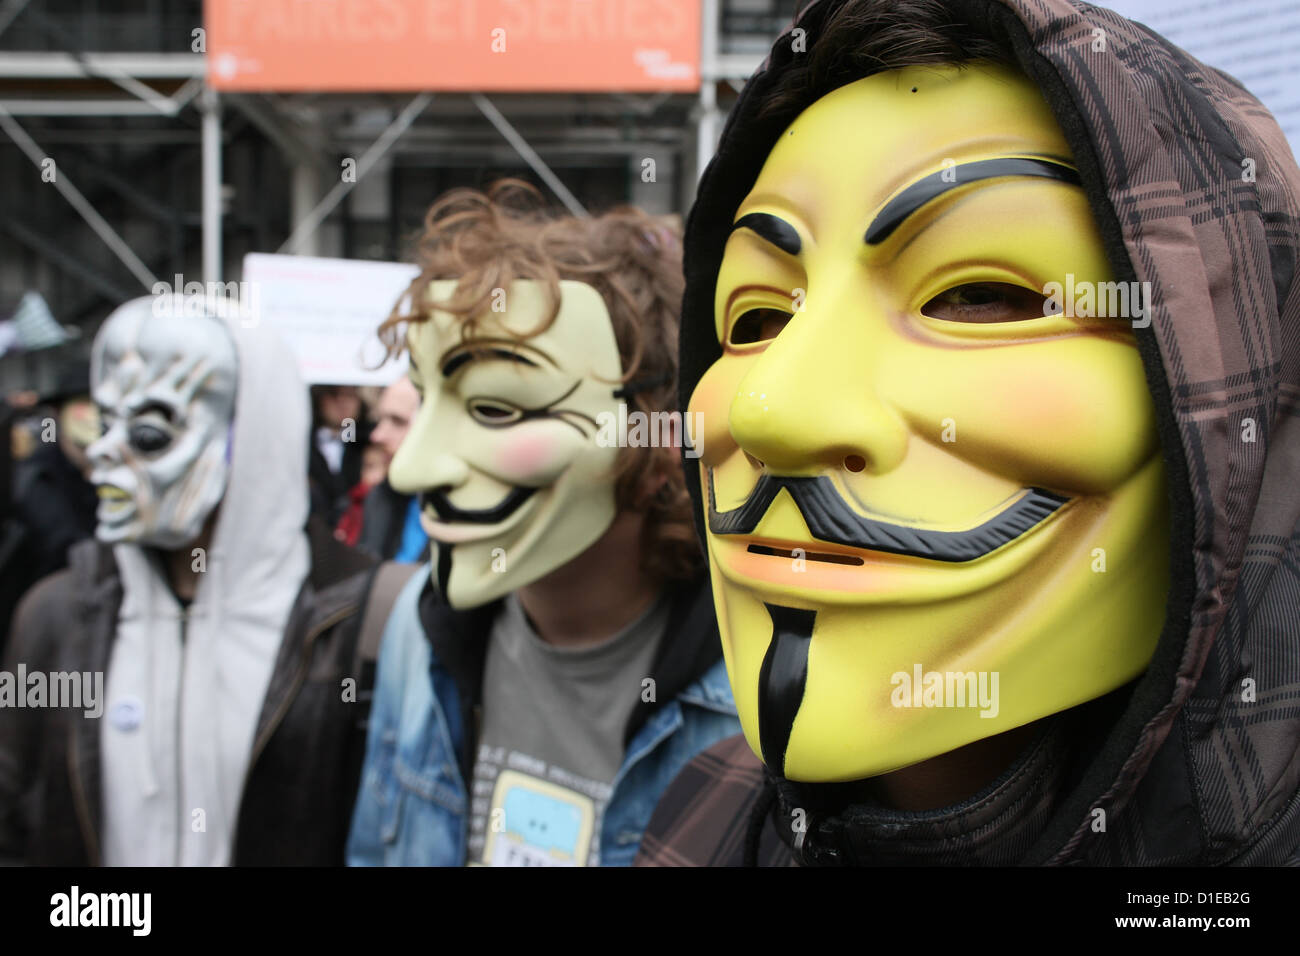 Les manifestants portant des masques de Guy Fawkes le mouvement anonyme, basé sur un personnage dans le film V pour Vendetta, Paris, France Banque D'Images